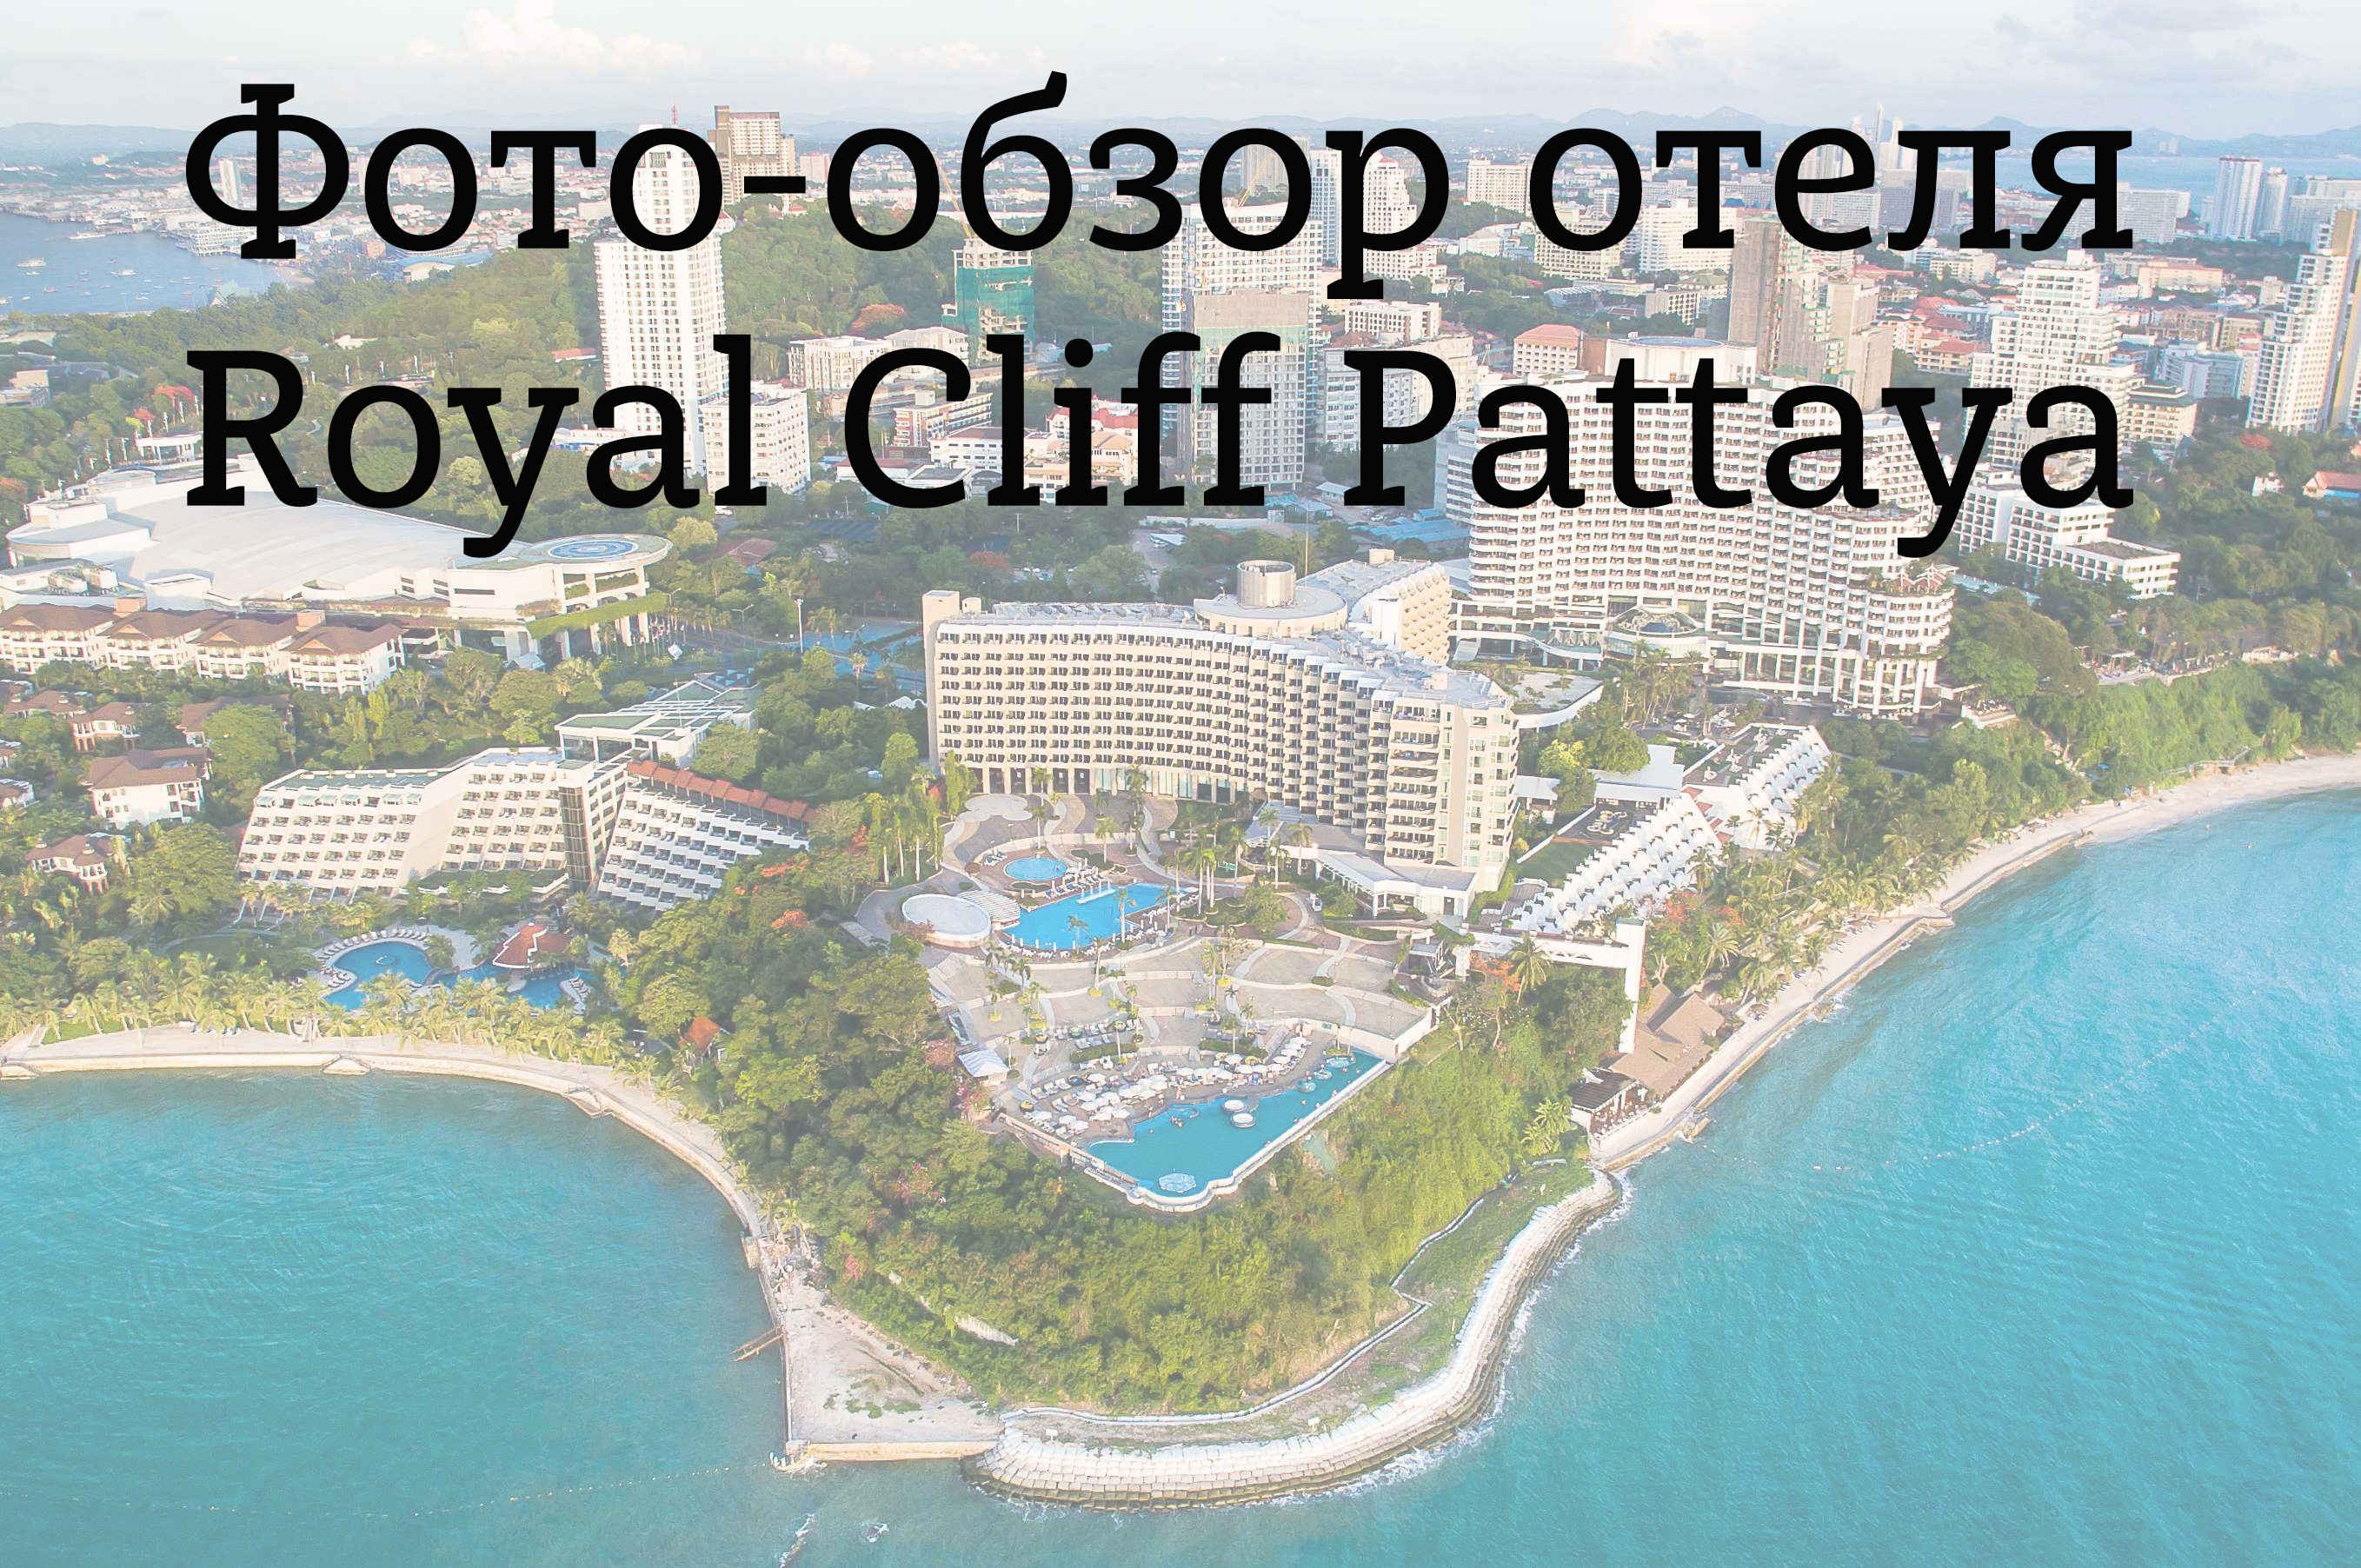 Royal Cliff Pattaya (Роял Кліф Паттайя) - п'ятизірковий готель, прекрасно підходить як для сімейного, так і для романтичного відпочинку в Паттаї